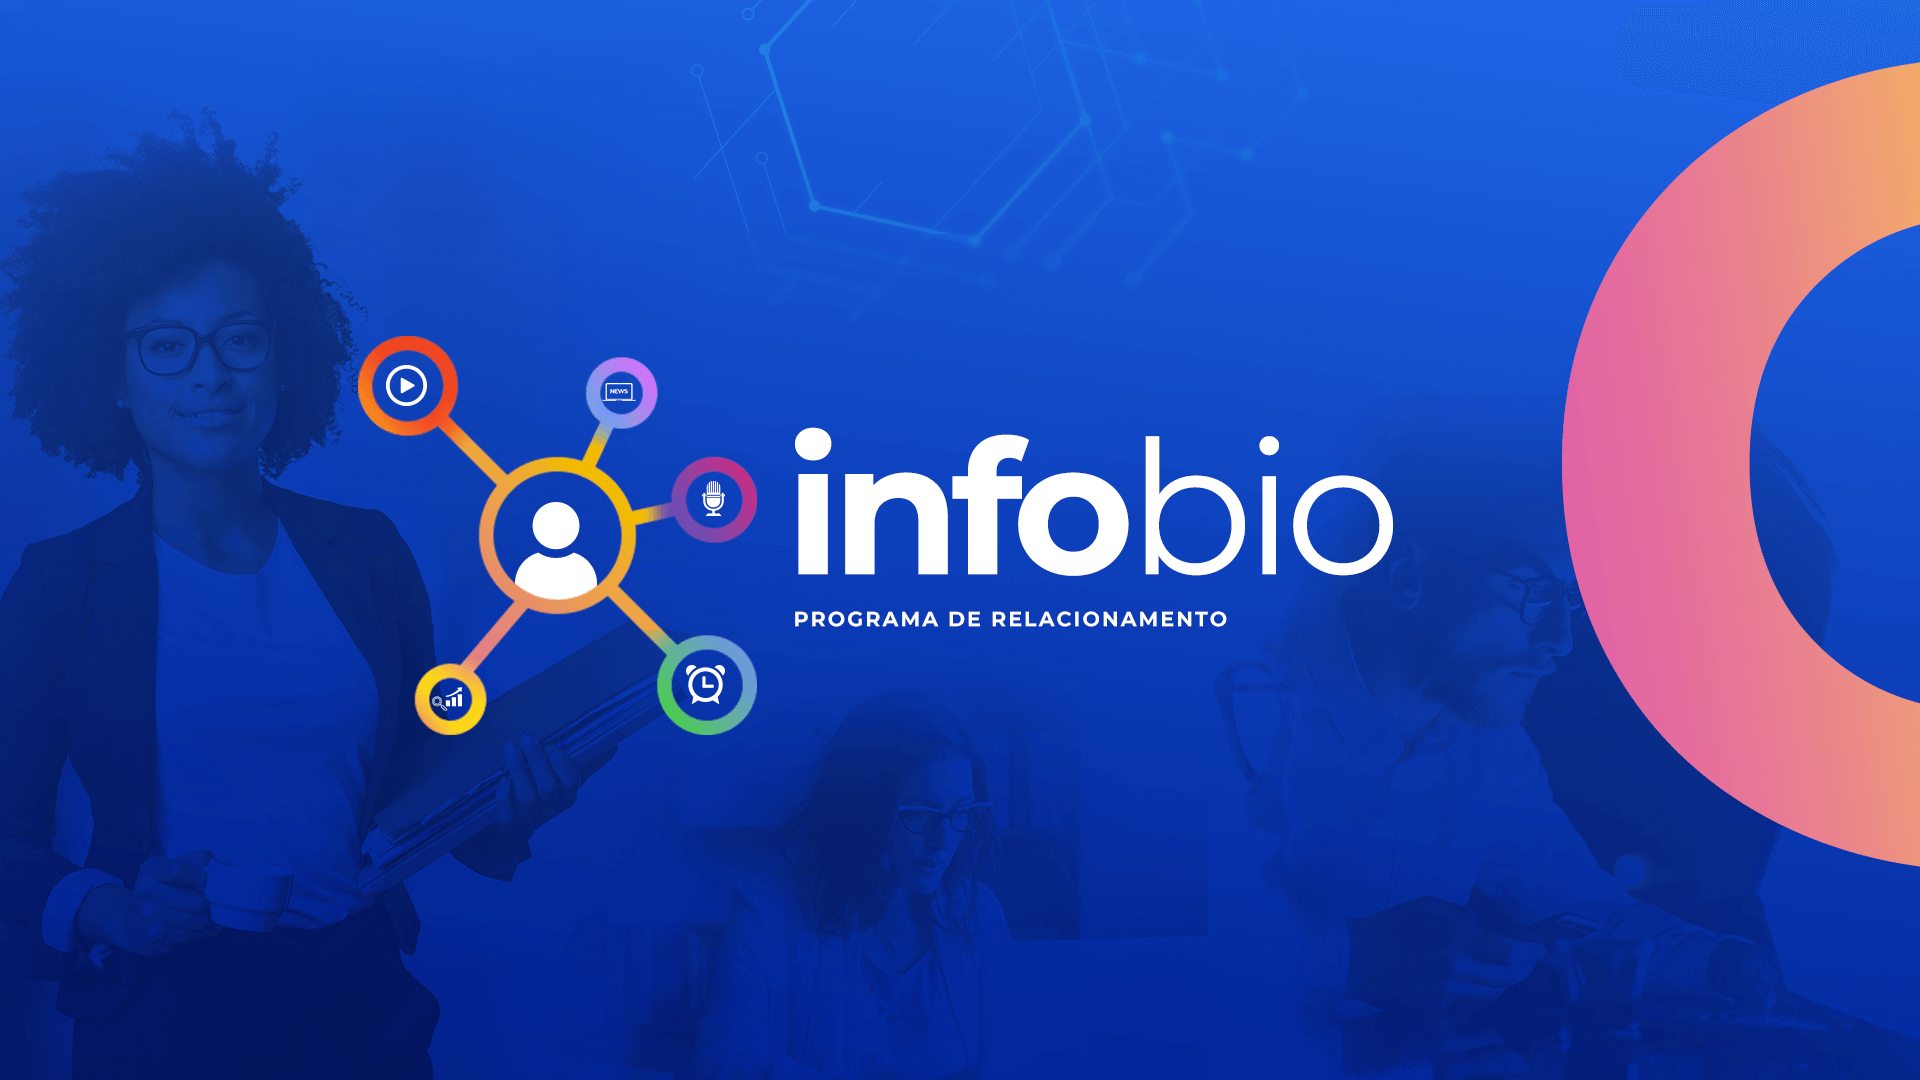 InfoBio: Ecossistema de conhecimento e troca de experiências